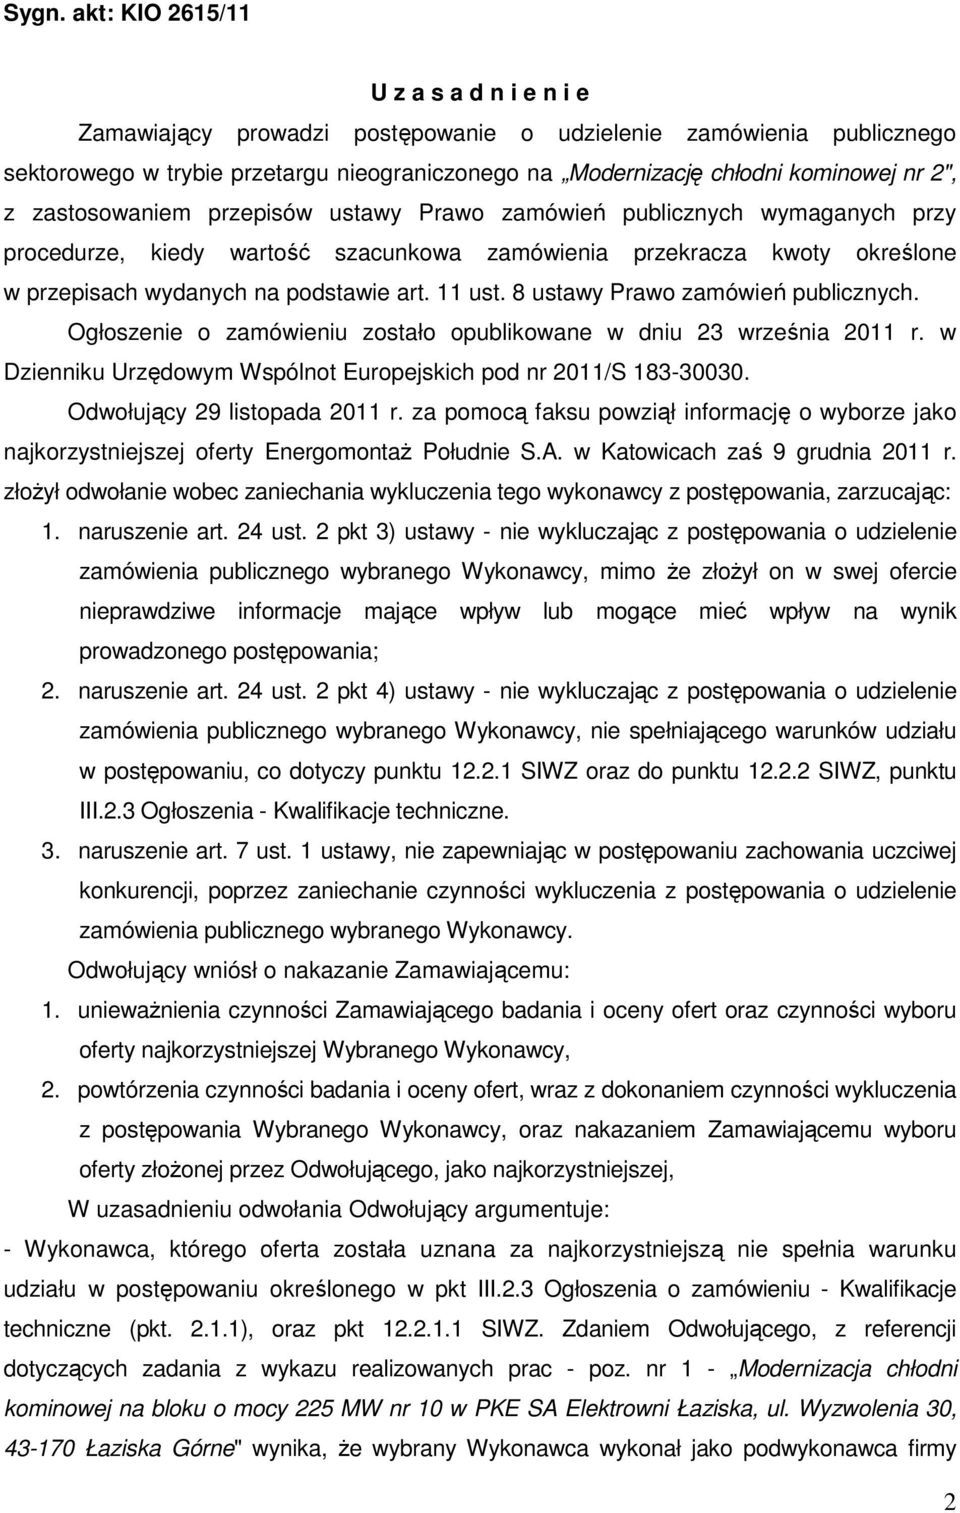 11 ust. 8 ustawy Prawo zamówień publicznych. Ogłoszenie o zamówieniu zostało opublikowane w dniu 23 września 2011 r. w Dzienniku Urzędowym Wspólnot Europejskich pod nr 2011/S 183-30030.